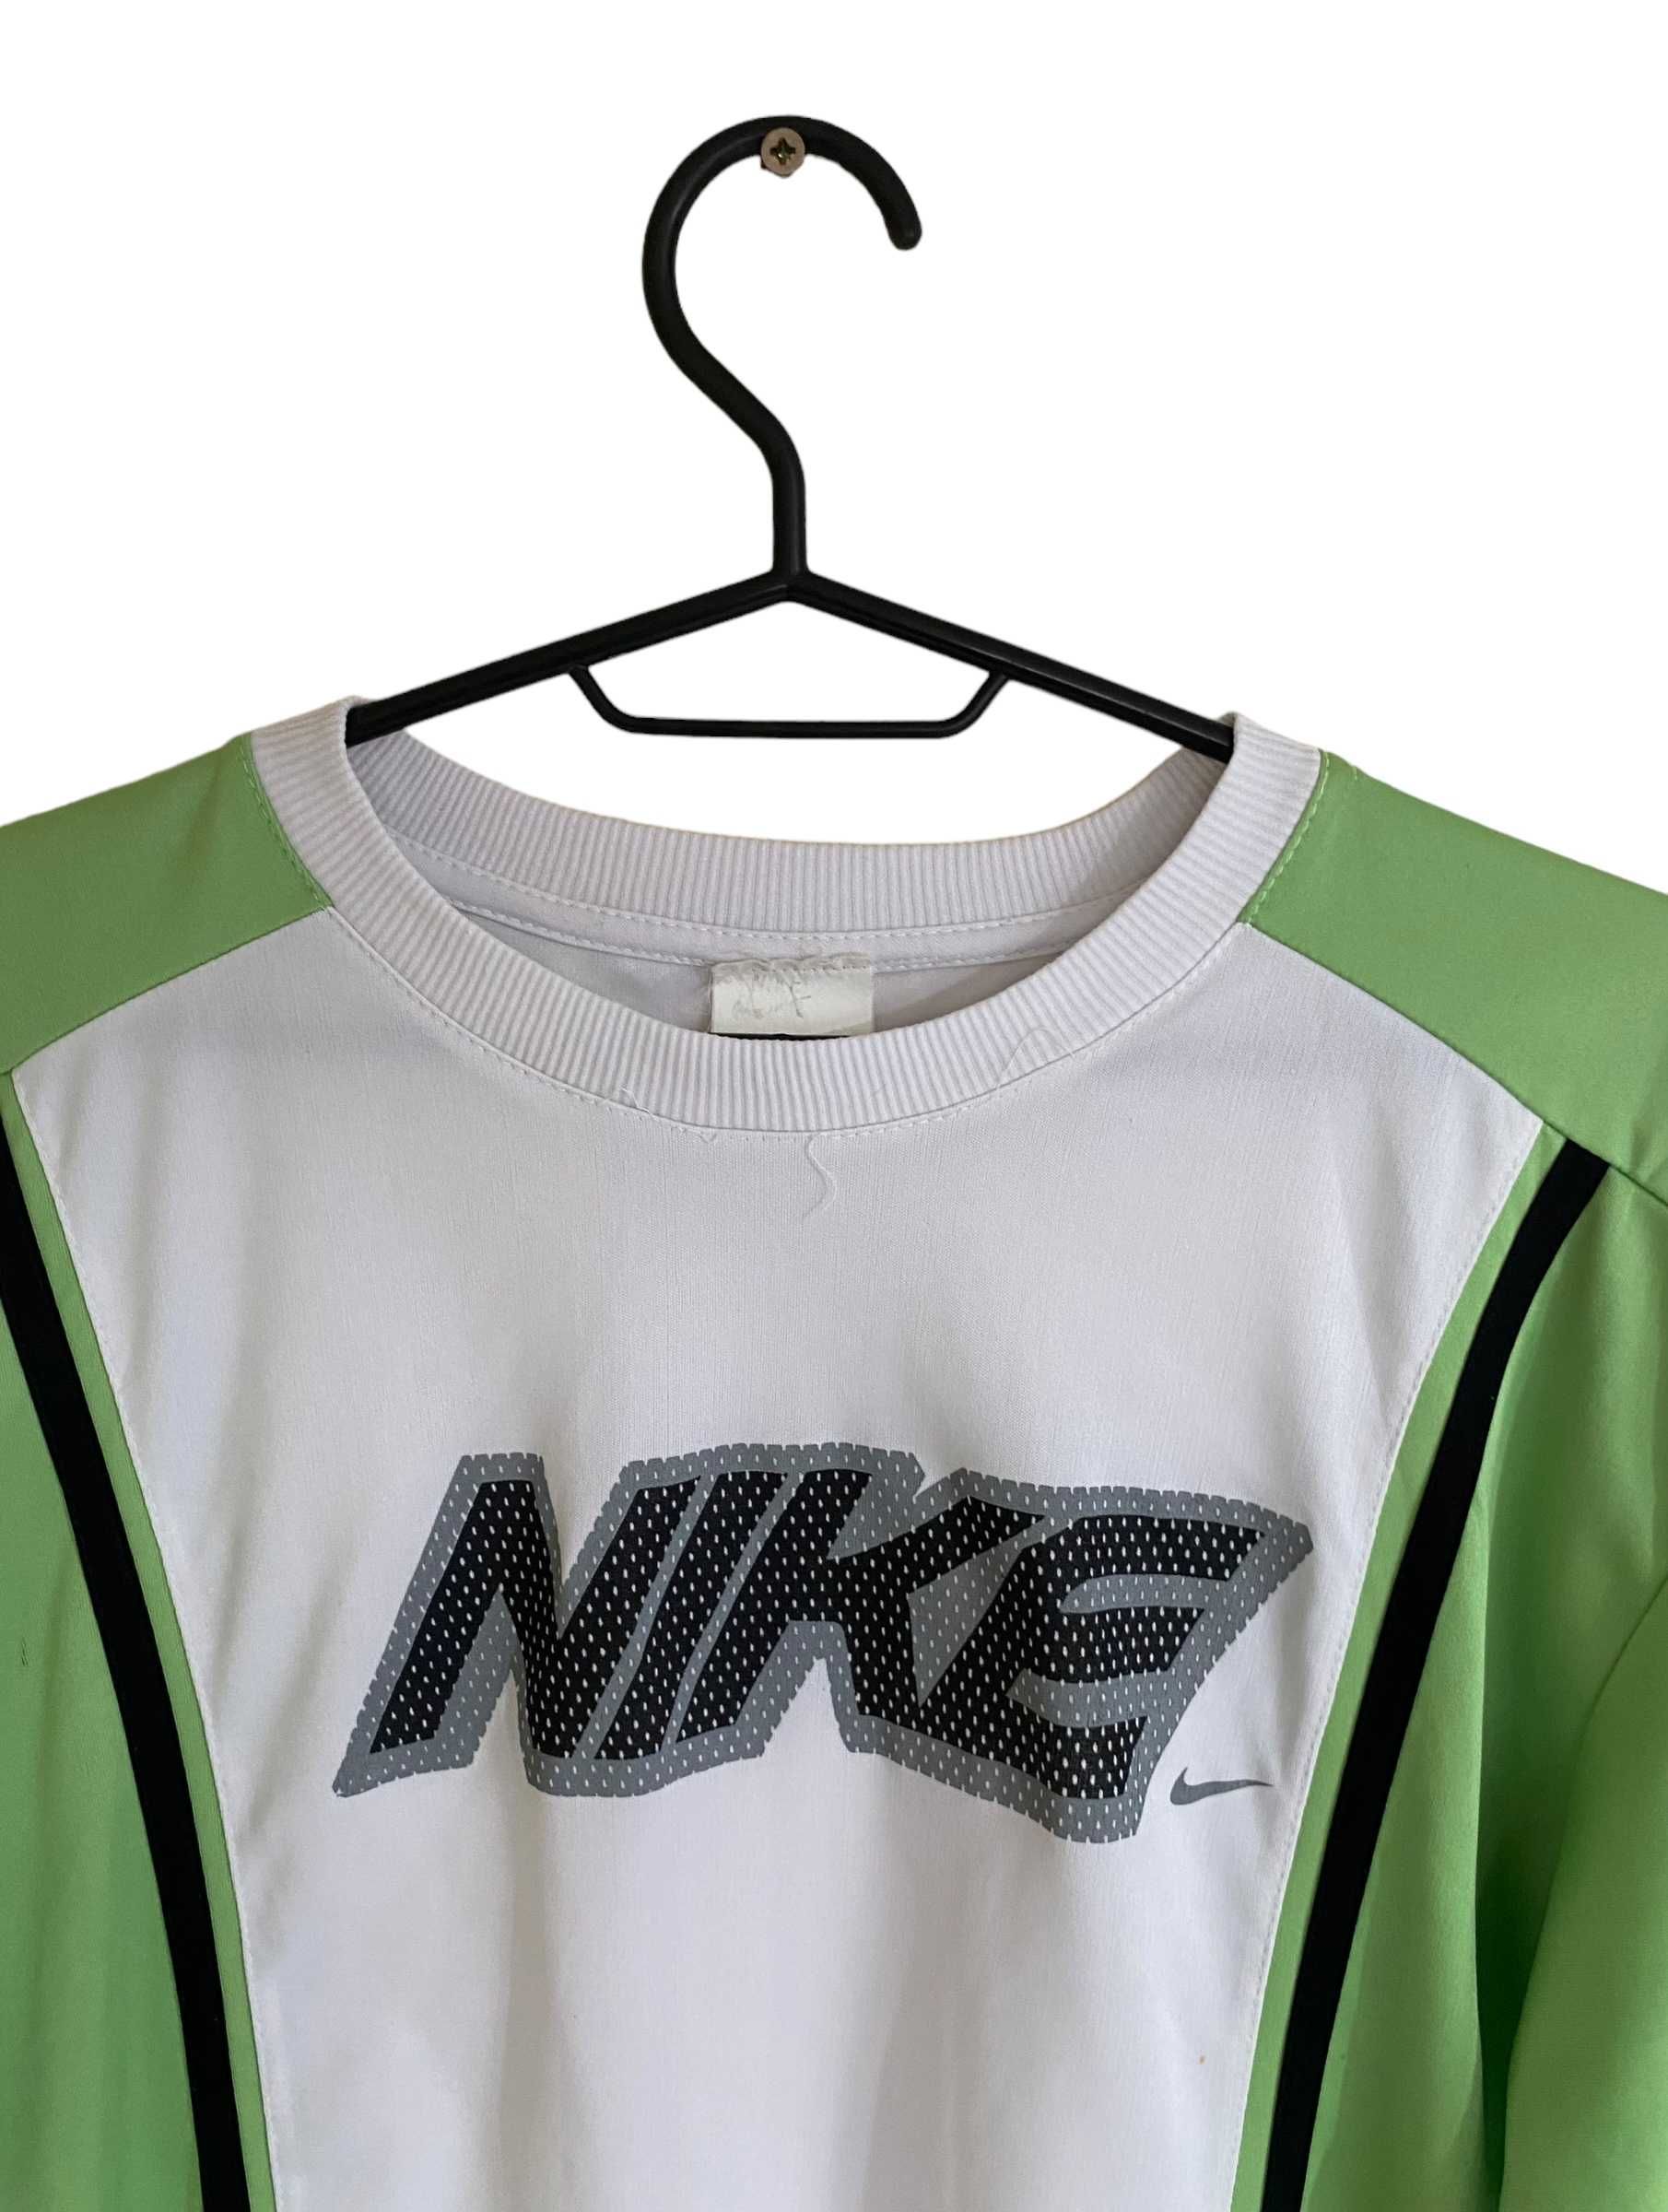 Nike t-shirt, rozmiar L, stan bardzo dobry